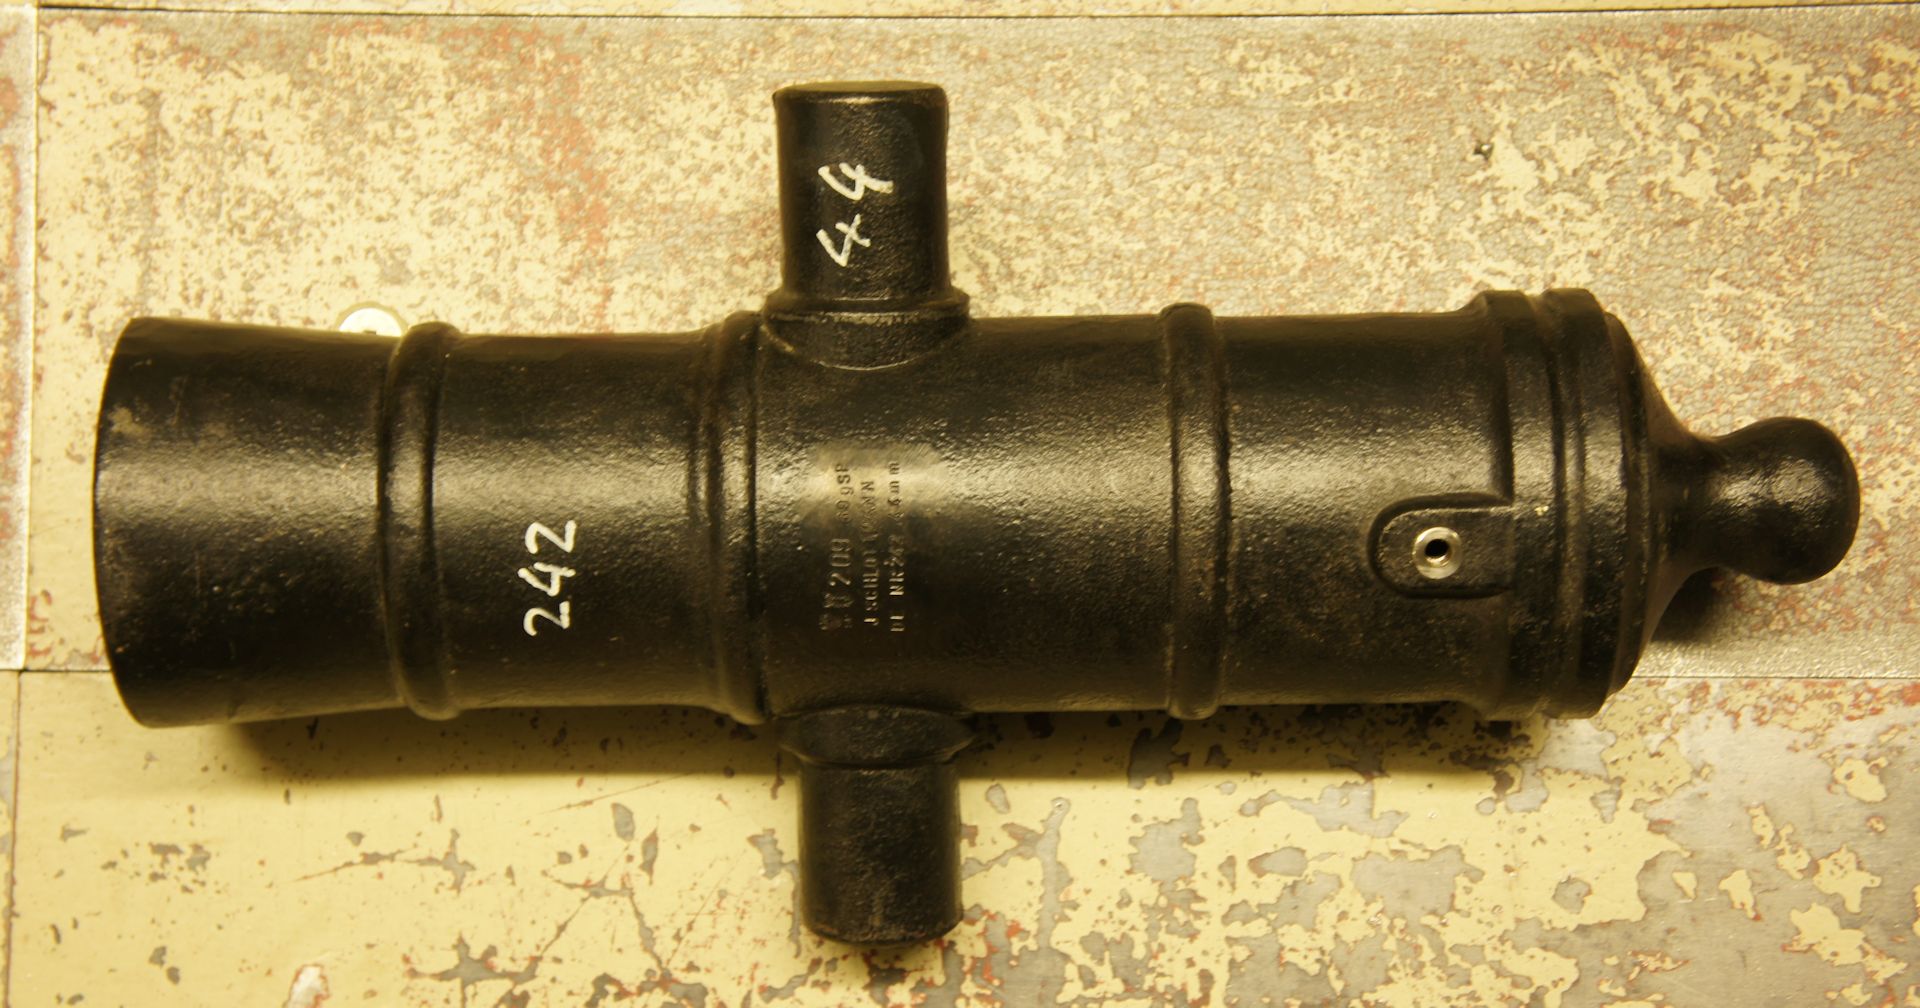 Das Kanonenrohr, Haubitze Kaliber 75mm, ist durch den den kurzen Lauf enorm laut und kann sehr gut zum Salutschießen eingesetzt werden. Der Bediener muss in Deutschland allerdings eine Erlaubnis nach dem Sprengstoffgesetz besitzen.